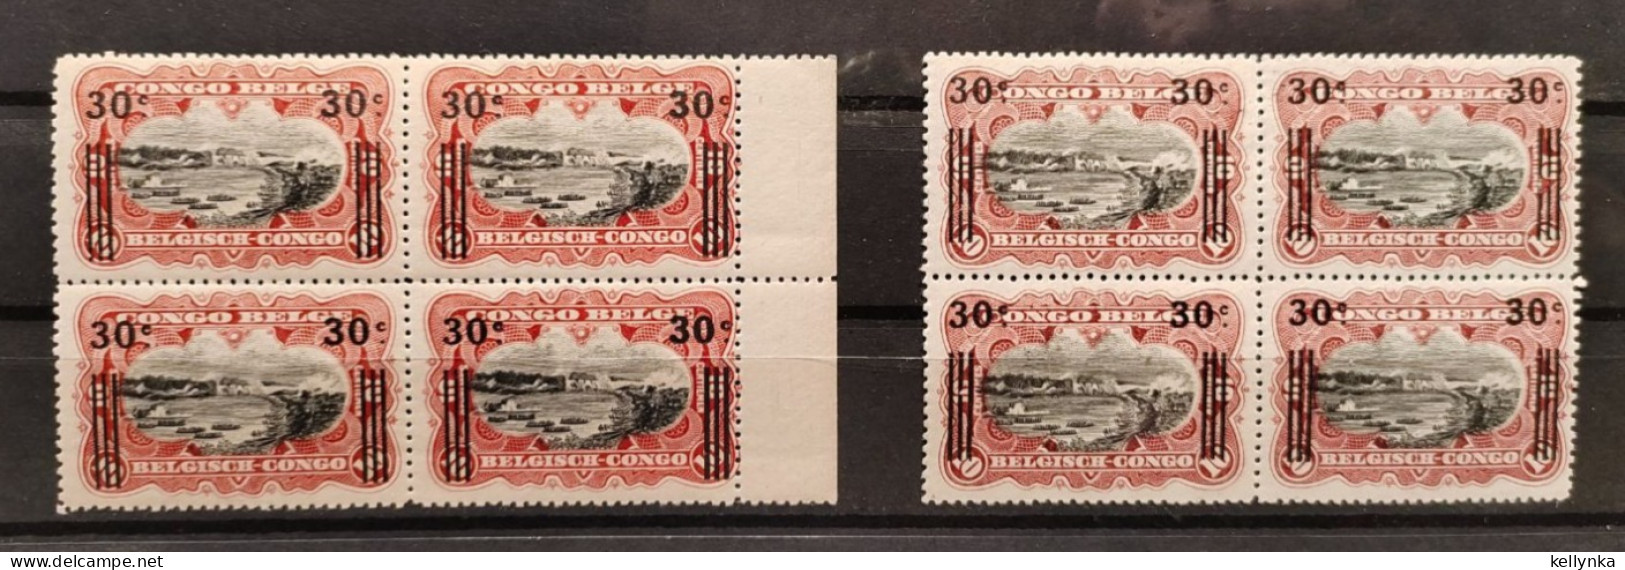 Congo Belge - 89 - 2 Blocs De 4 - Nuances - Carmin & Carmin-Laque - Récupération - 1921 - MNH & MH - Unused Stamps